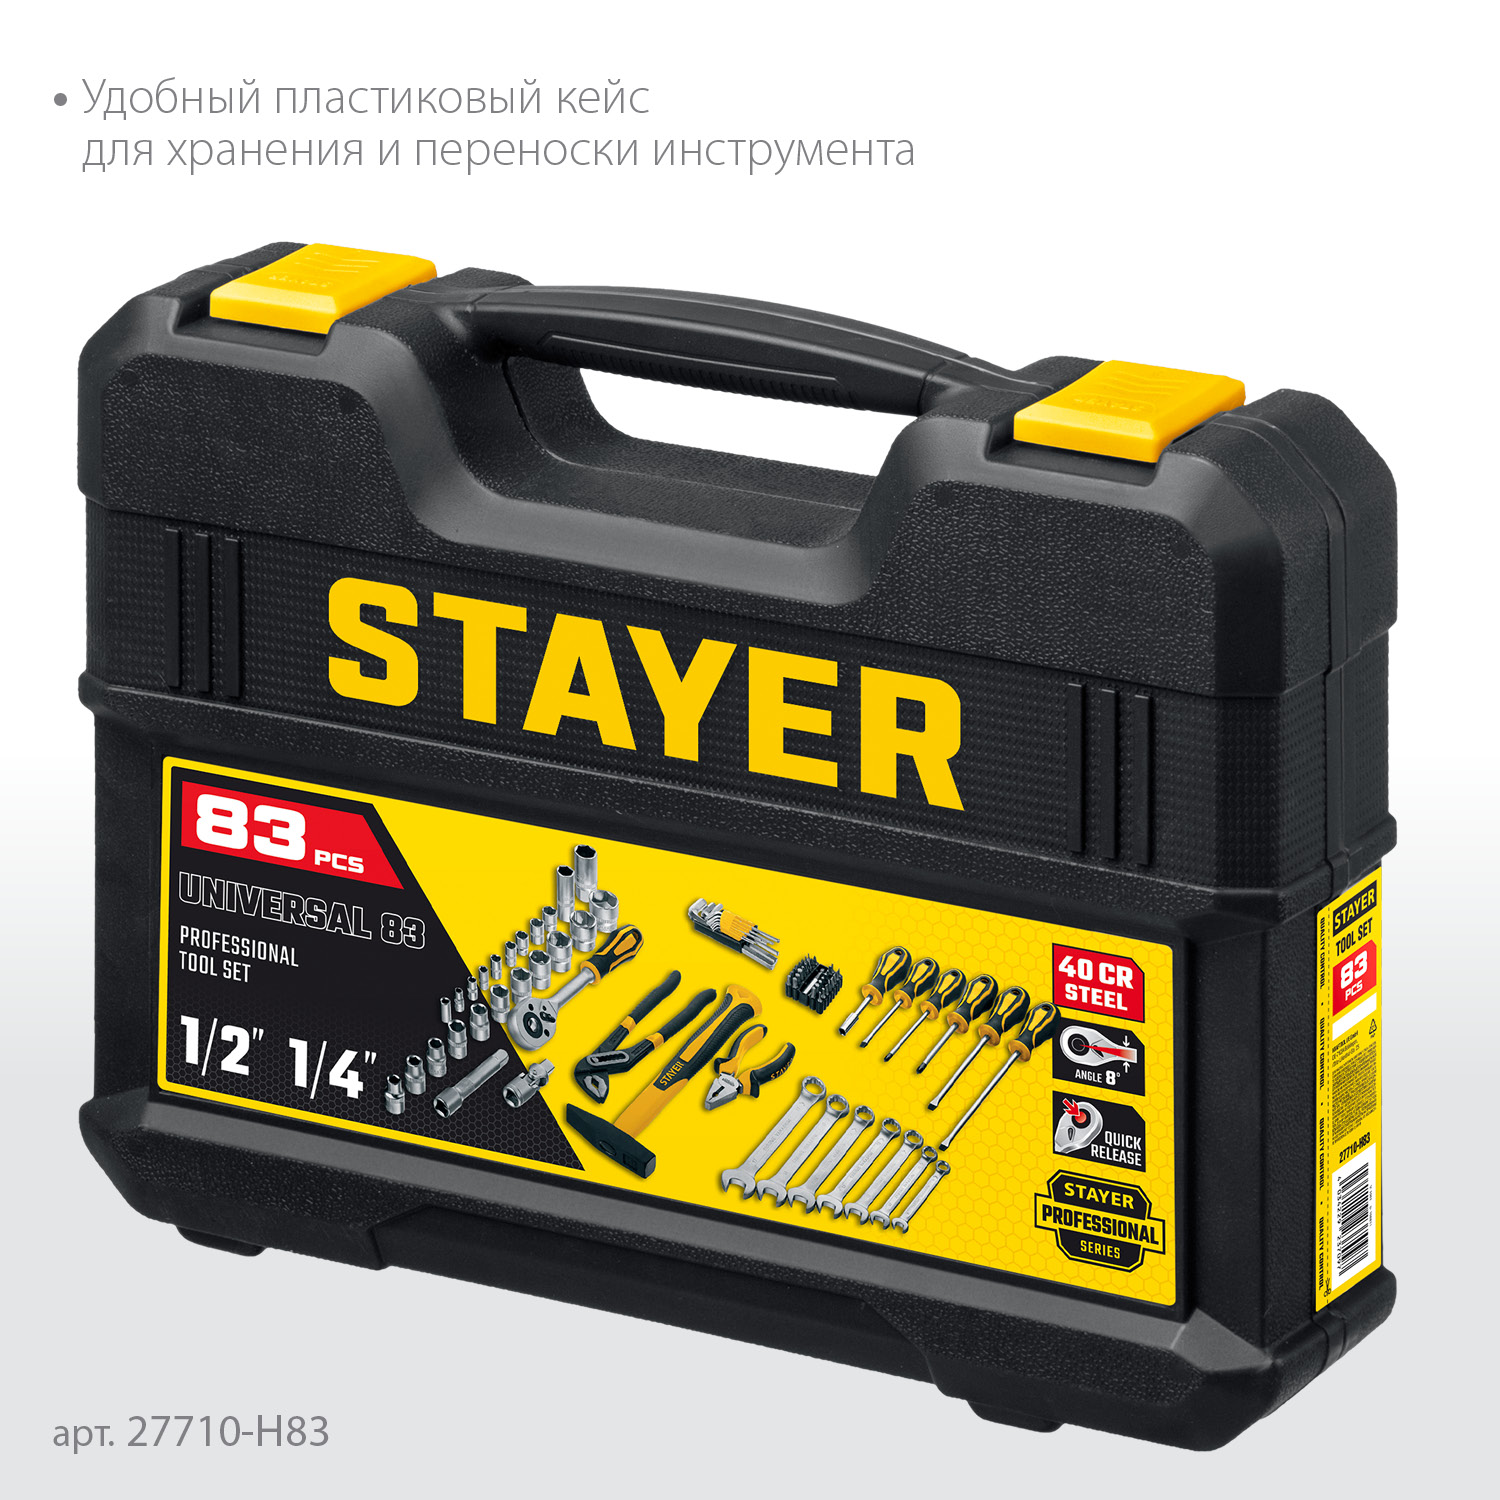 STAYER UNIVERSAL 83, 83 предм., (1/2″+ 1/4″), универсальный набор инструмента, Professional (27710-H83)